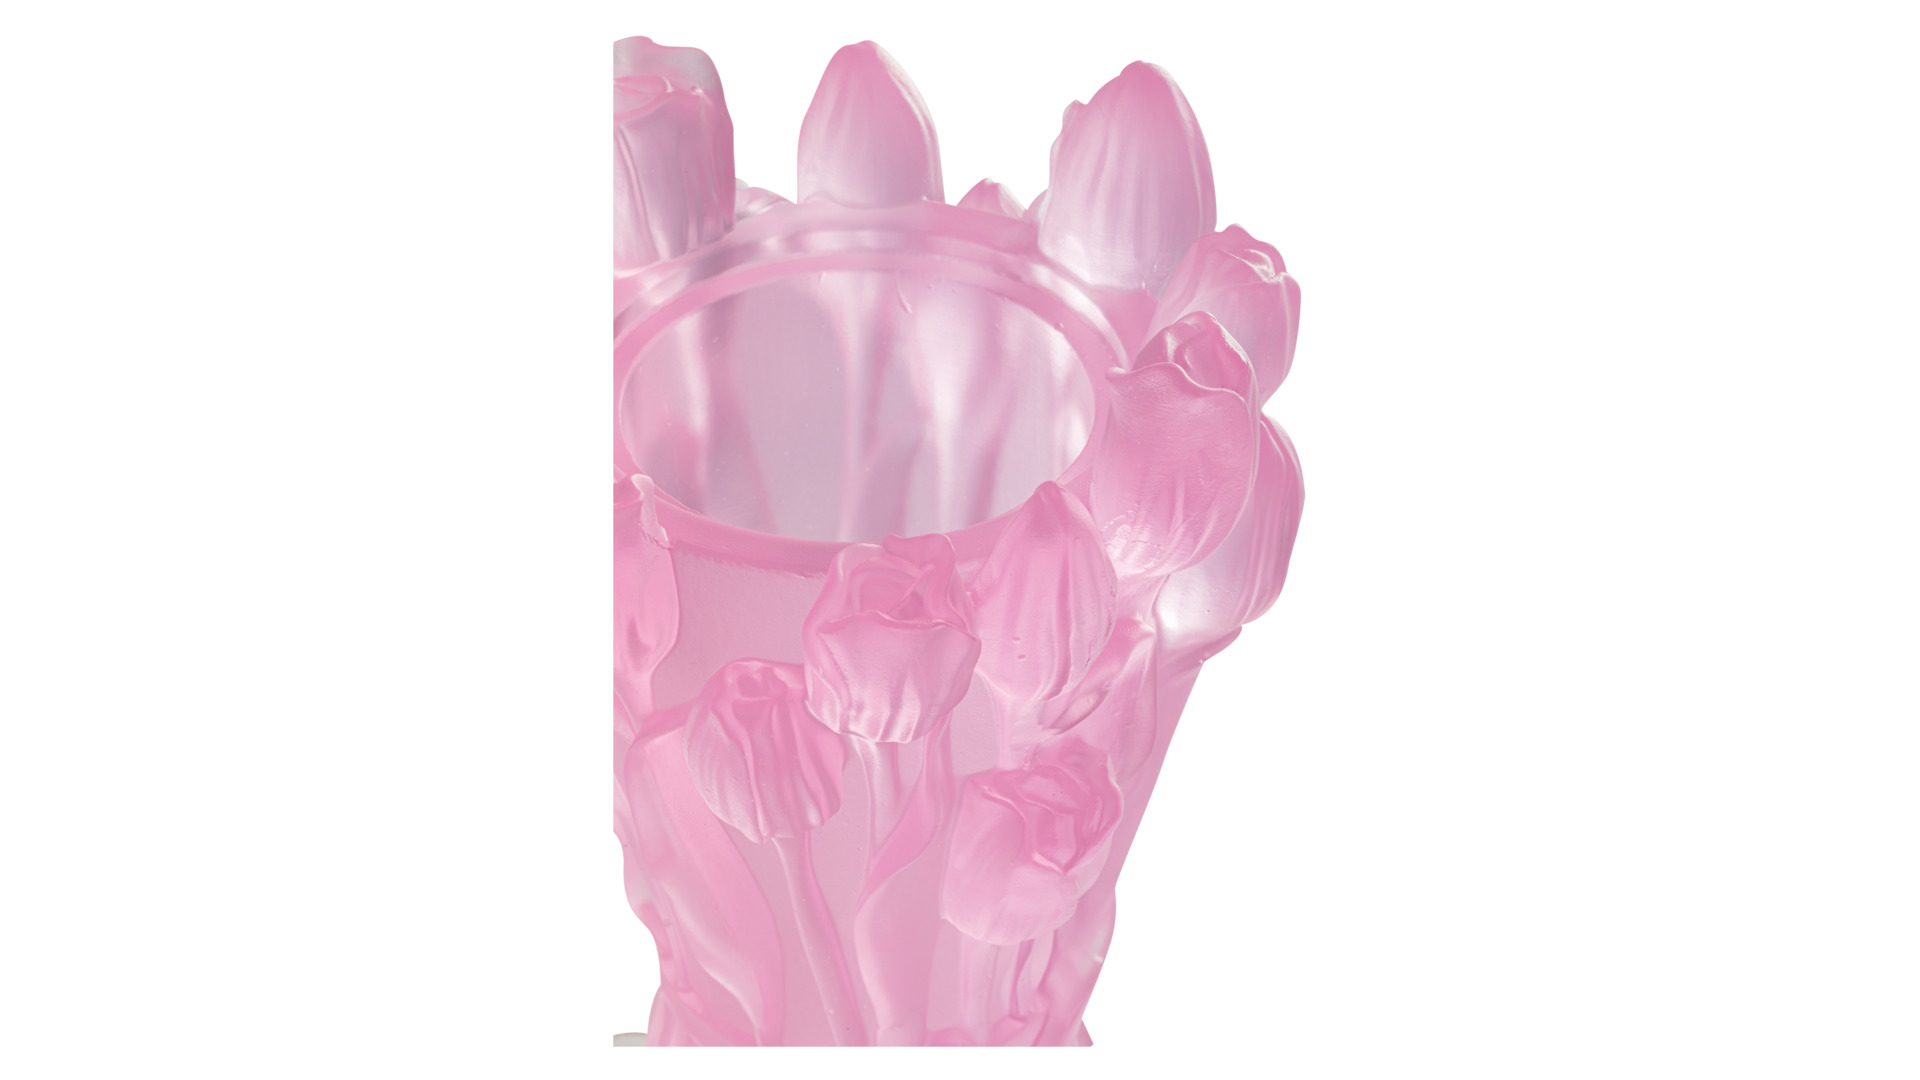 Ваза Cristal de Paris Букет тюльпанов 20 см, розовая